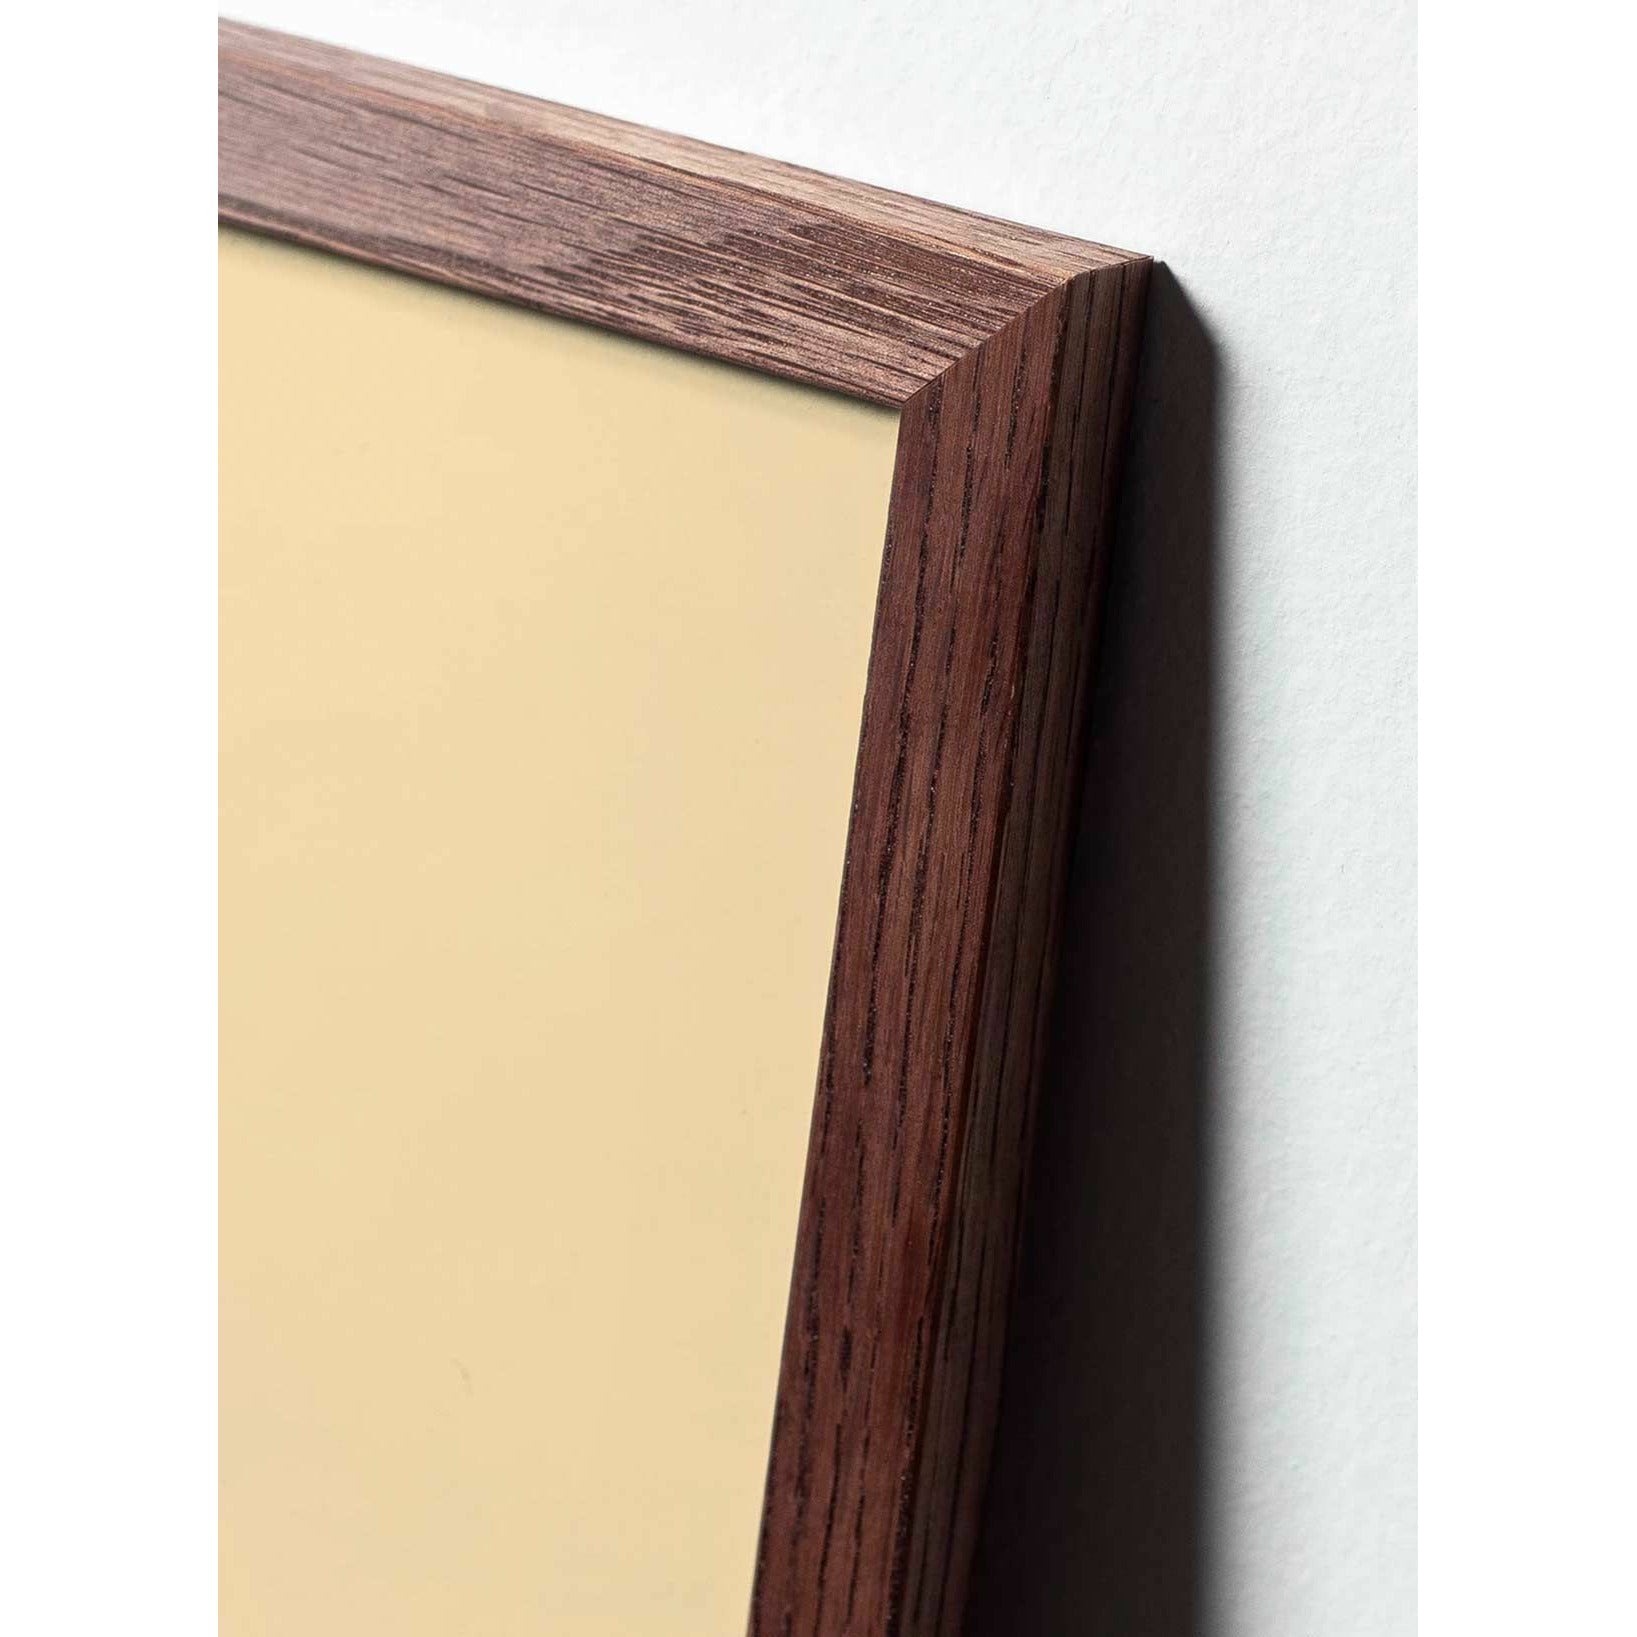 Póster clásico de BrainChild Teddy Bear, marco hecho de madera oscura 50x70 cm, fondo de color arena